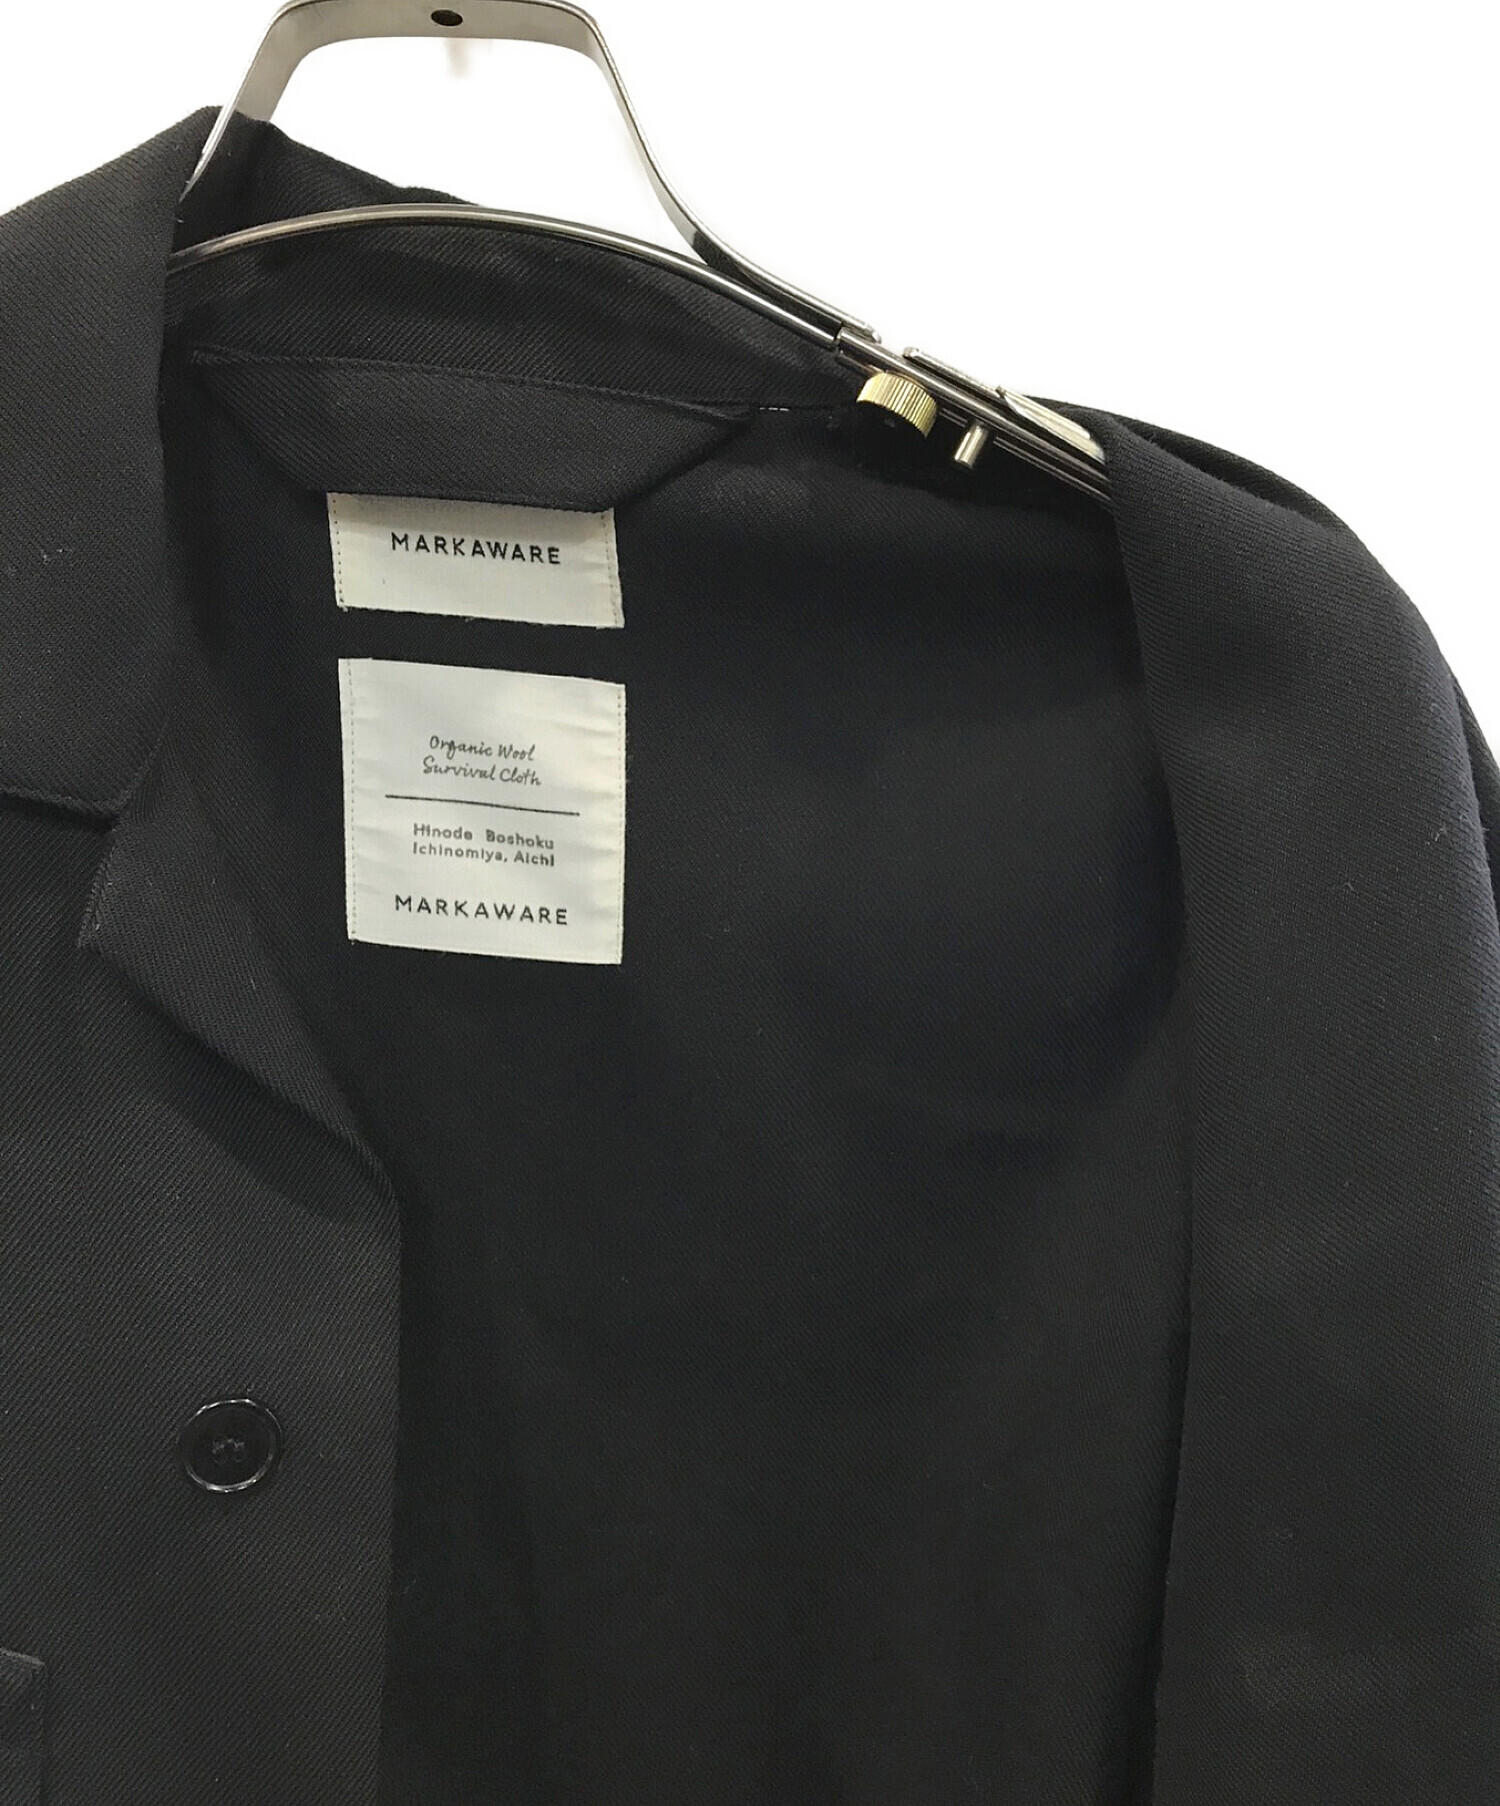 MARKAWARE (マーカウェア) ユーティリティシャツジャケット ブラック サイズ:1